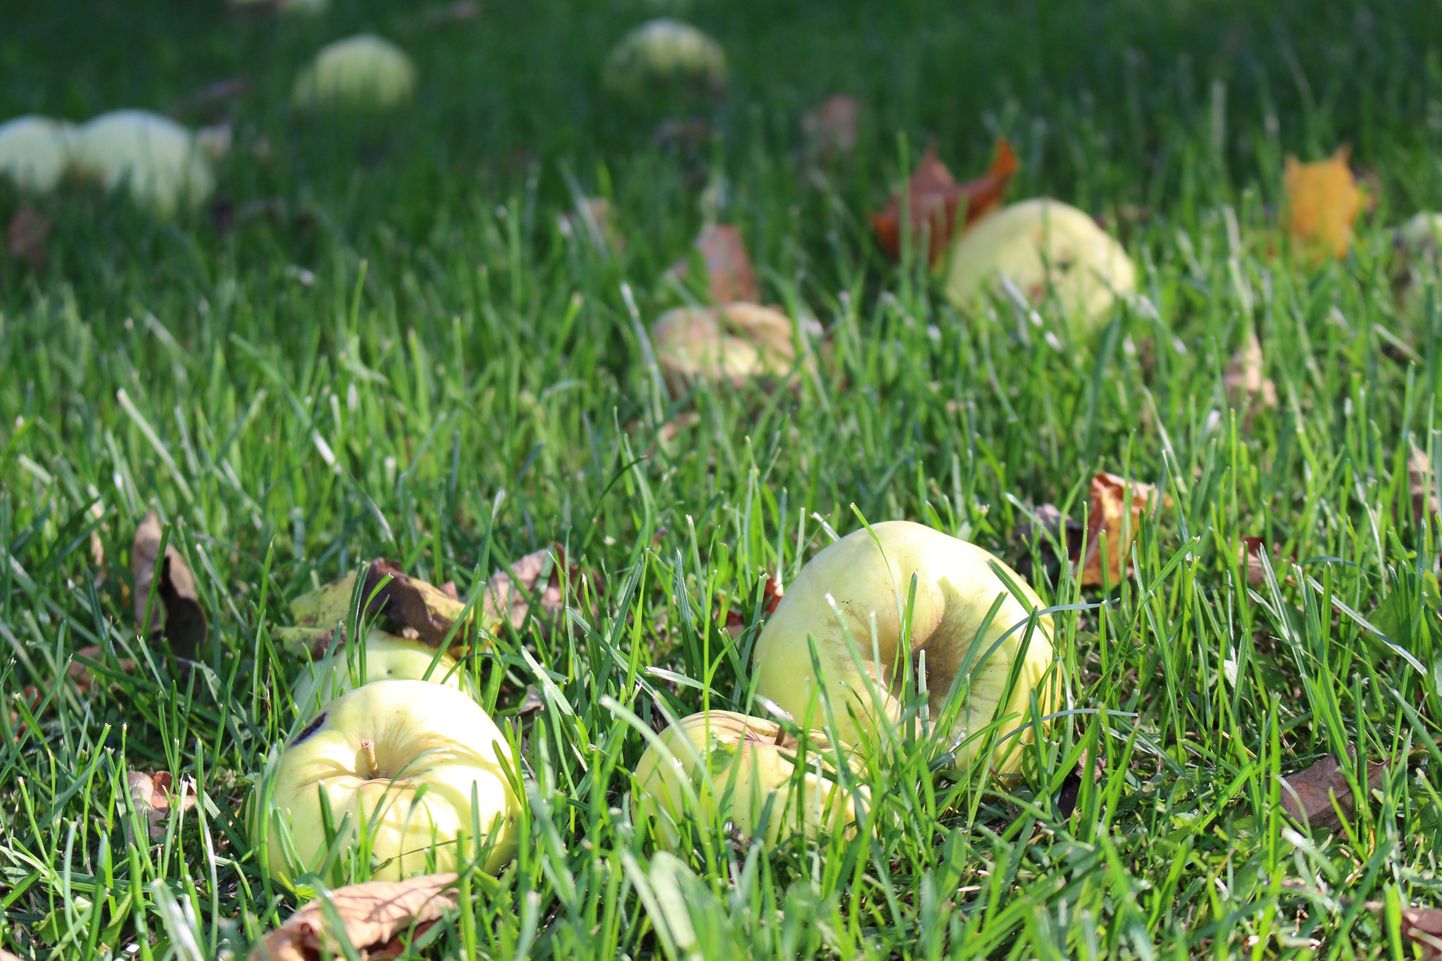 Puu alt võiks kokku korjata nii vedelevad õunad kui lehed ja kompostikasti viia. Purustatud õunad ja lehed komposteeruvad kiiremini ja neid saab kompostina varem kasutama hakata.